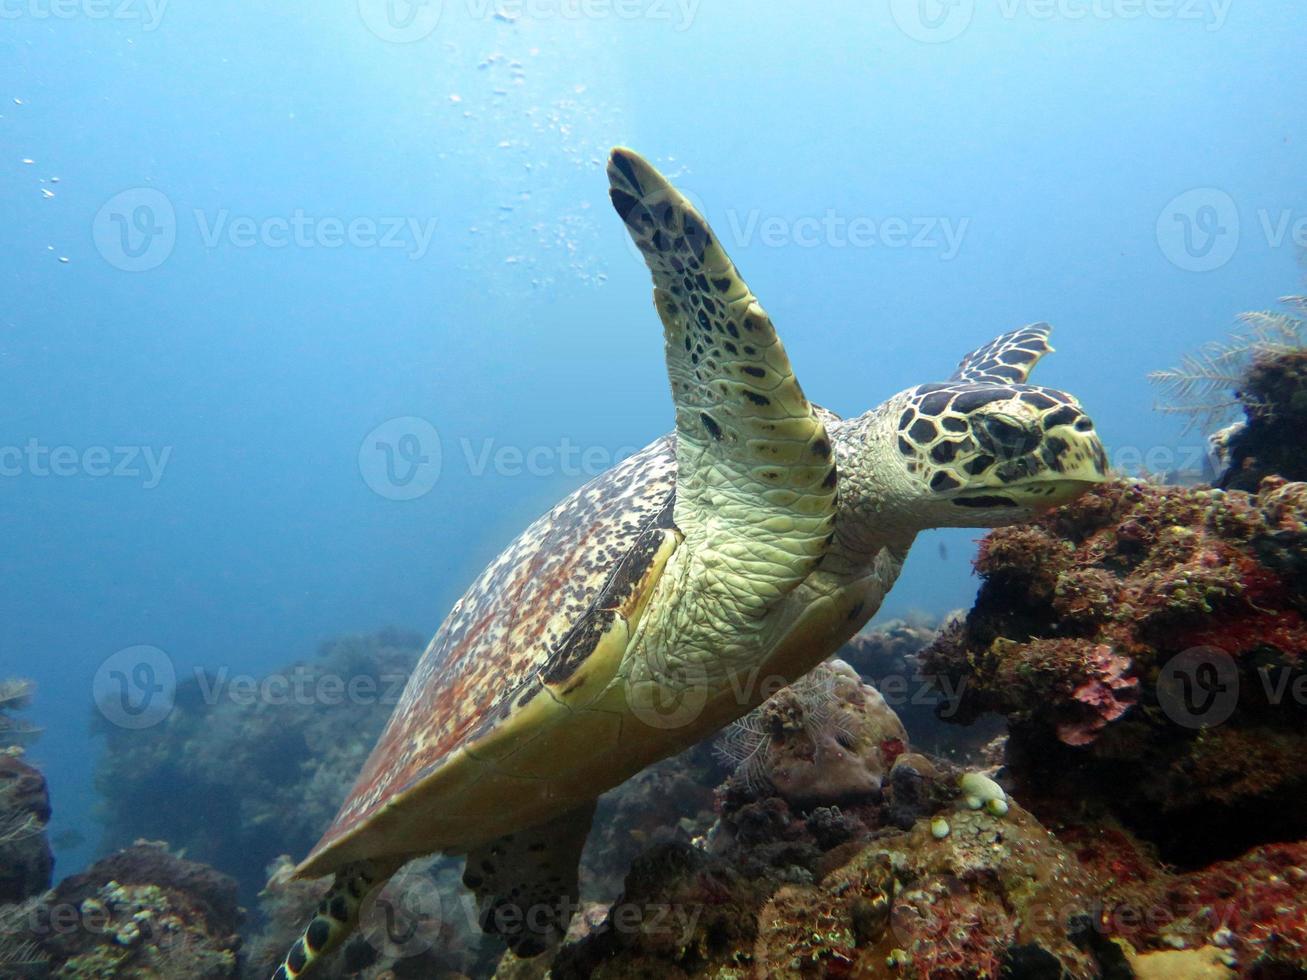 Hawksbill Meeresschildkrötenströmung auf Korallenriffinsel, Bali. foto